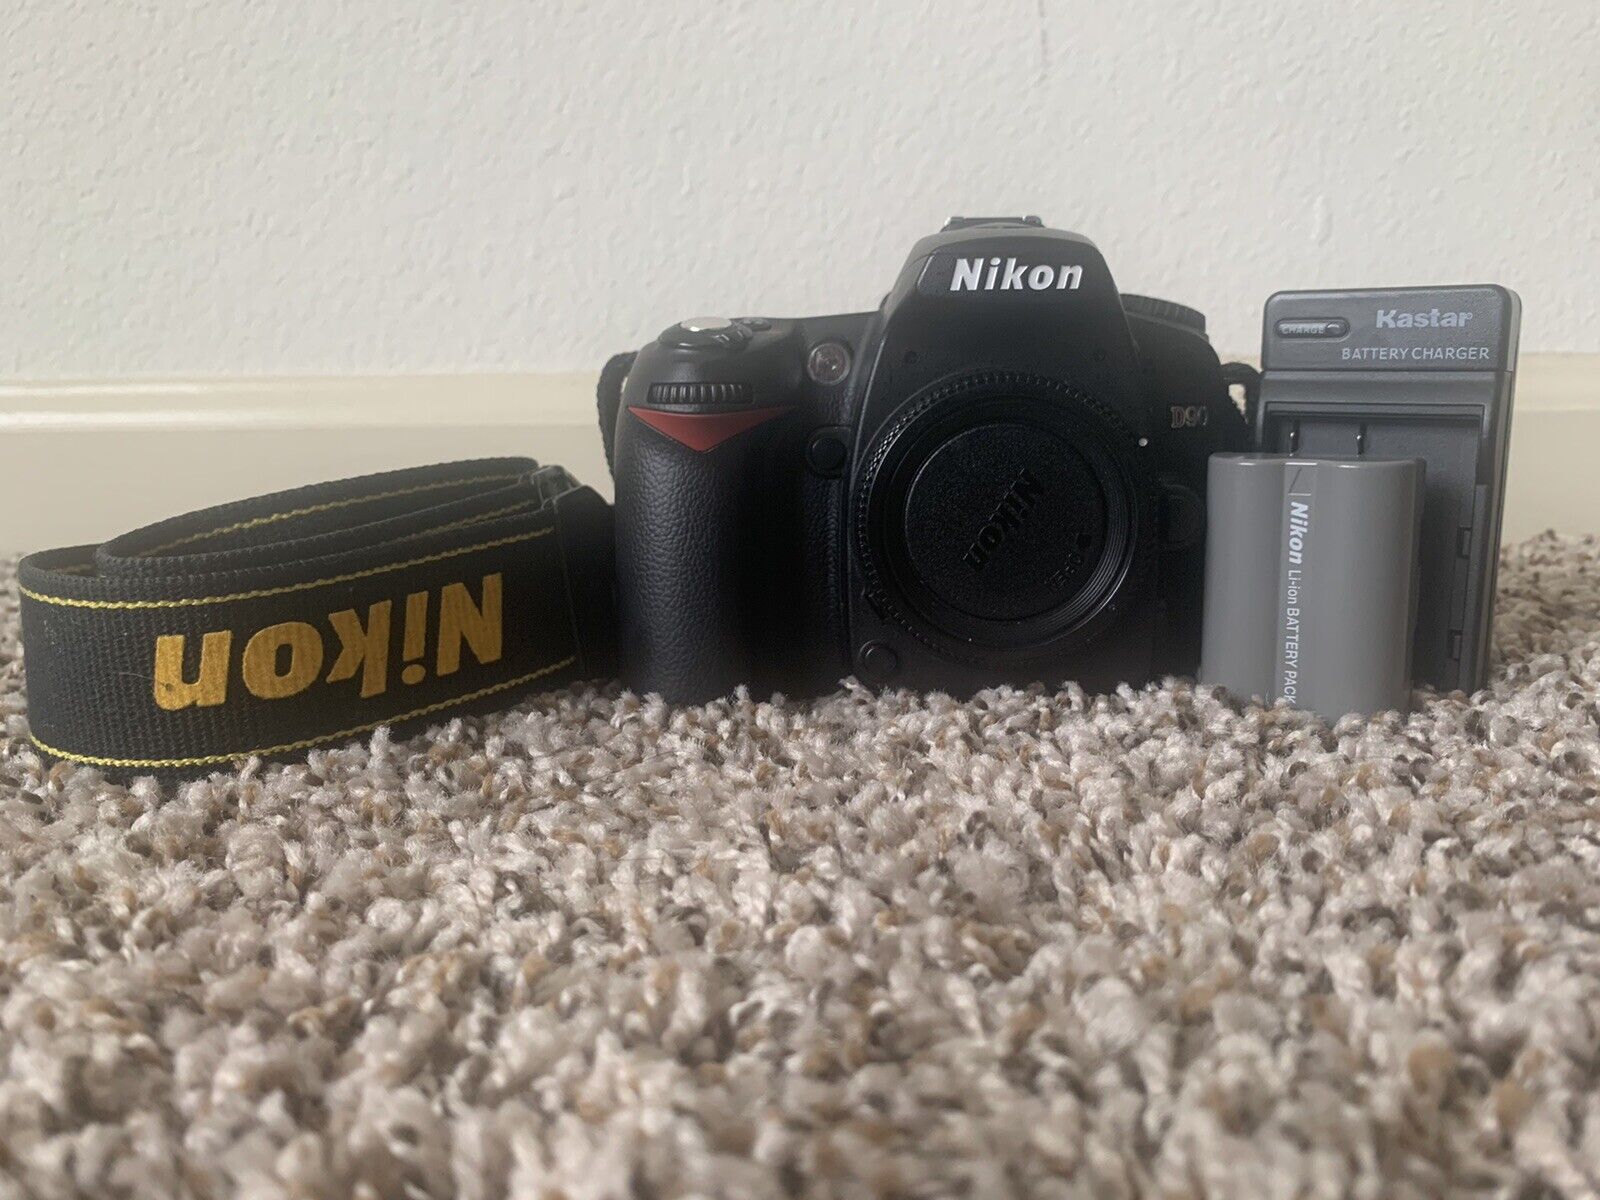 Nikon D90 DX-Format CMOS Digital SLR Camera - Black. Tested 13500 Shutter Count